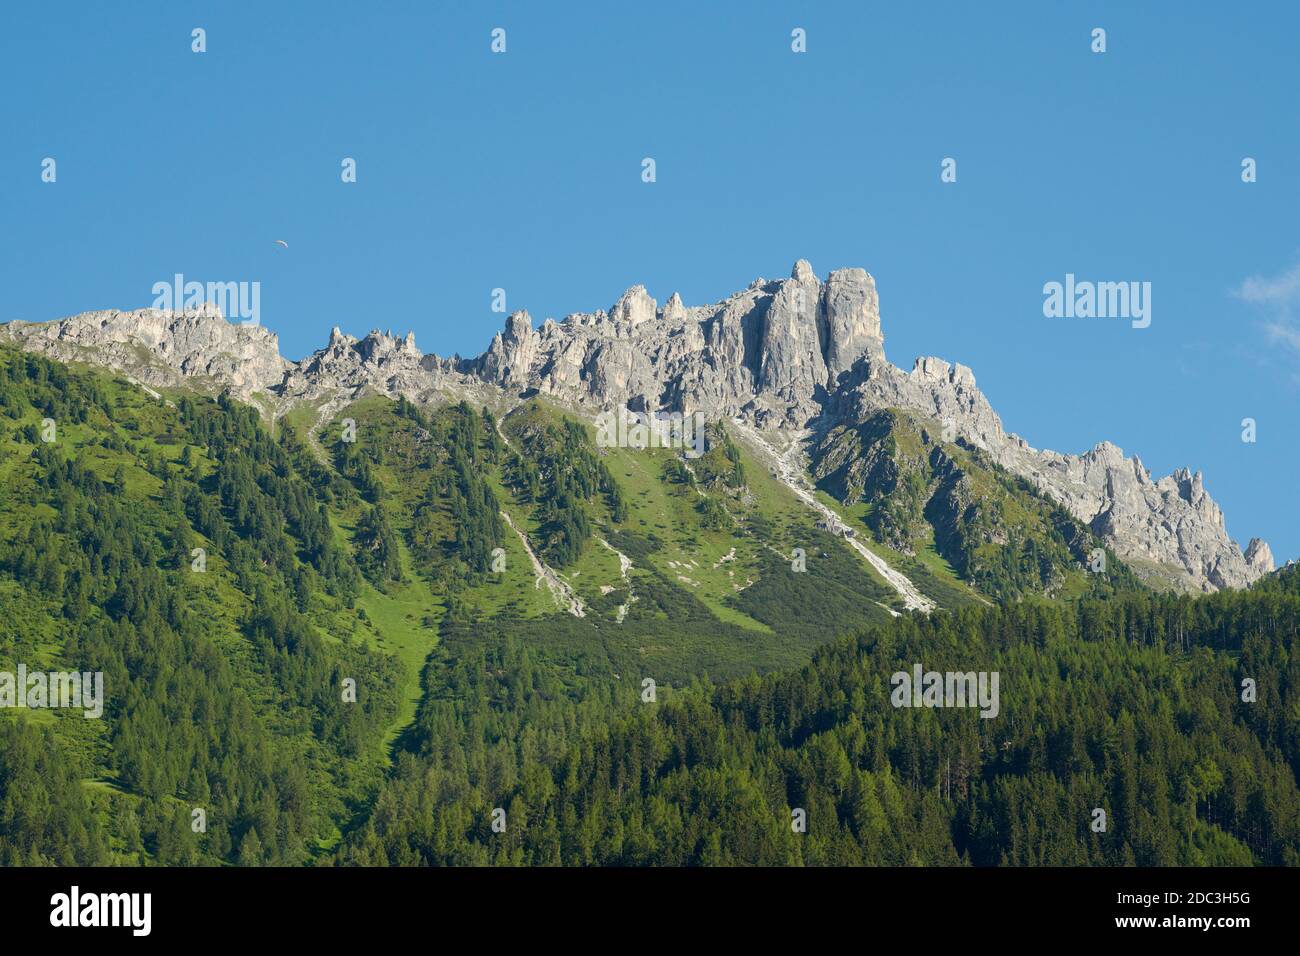 Mountain 'Elfer' in the stubai valley, Tyrol, Austria Stock Photo